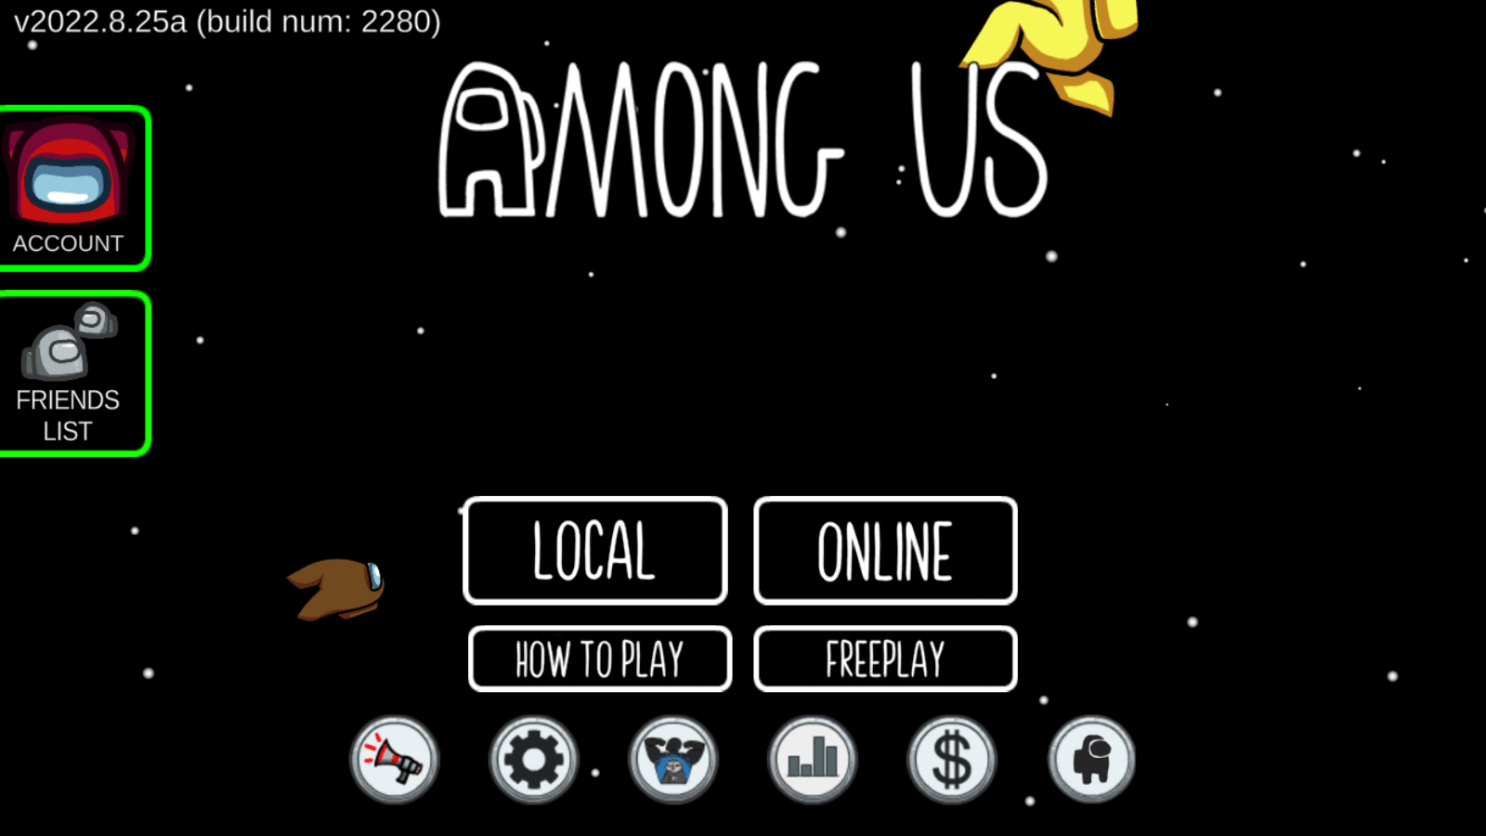 Amon us first menu page